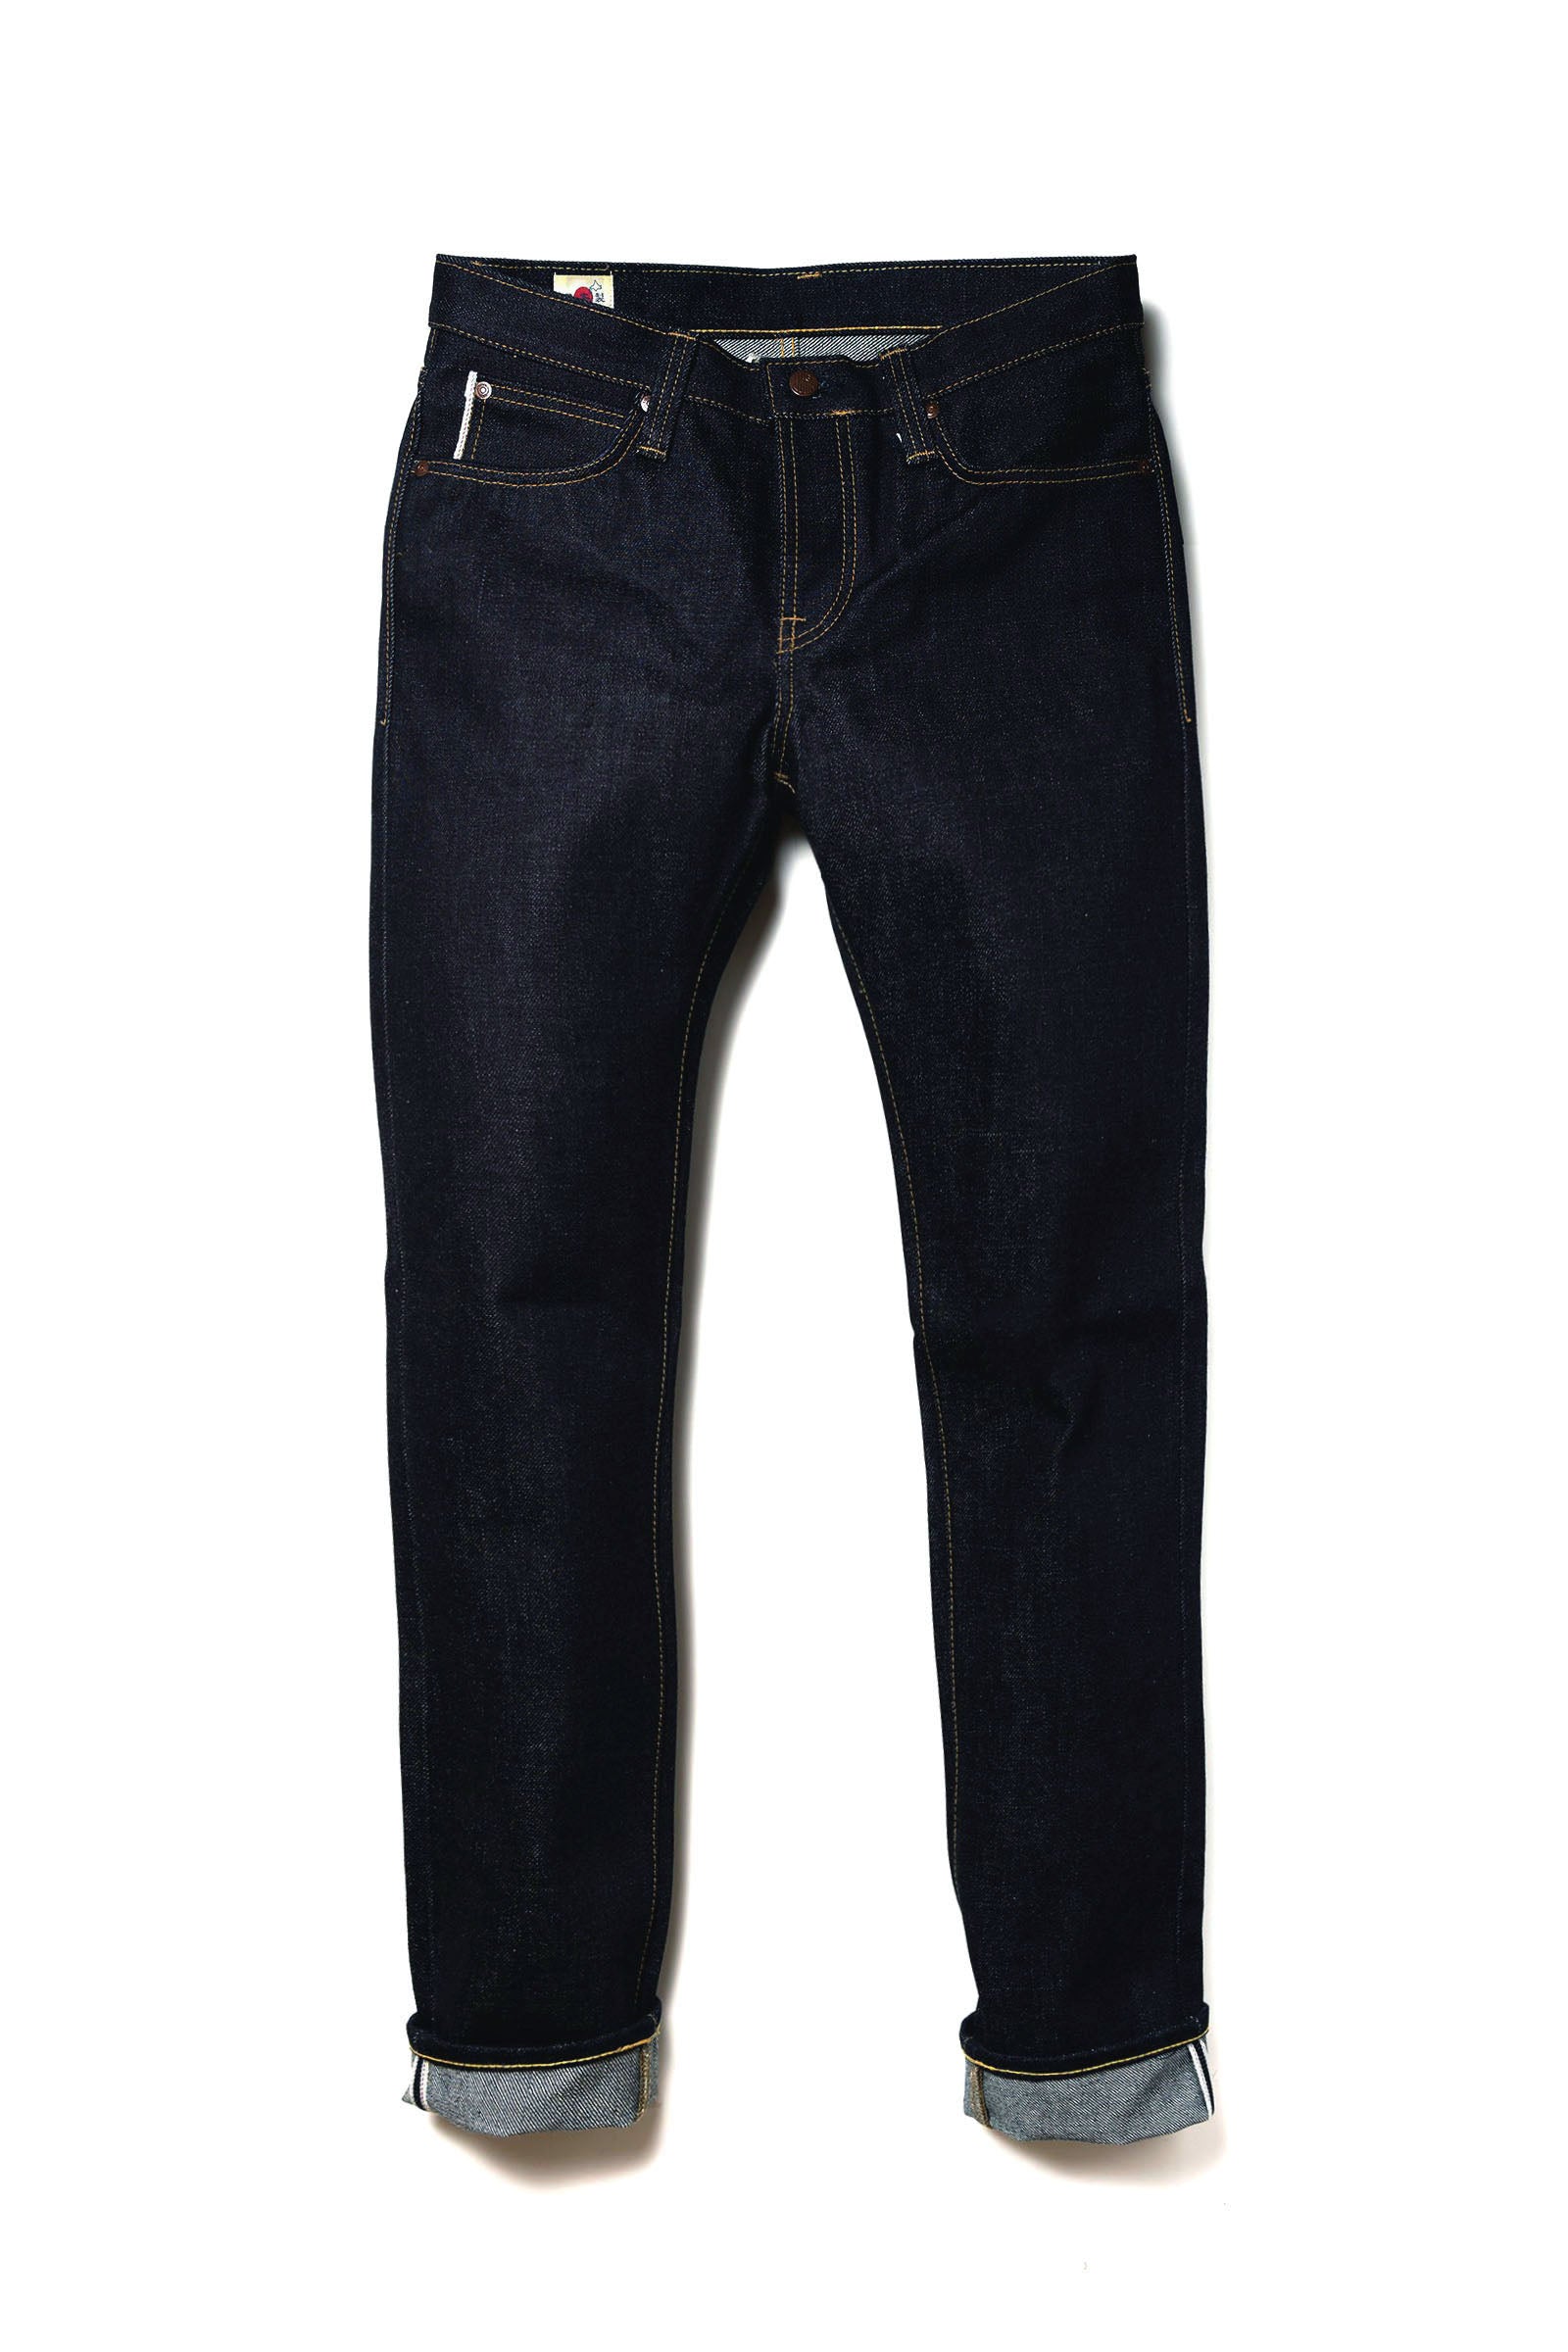 Edwin Jeans Vintage Edwin Denim Jeans Pants Made in Japan Size 30/31x30.5 -  Etsy